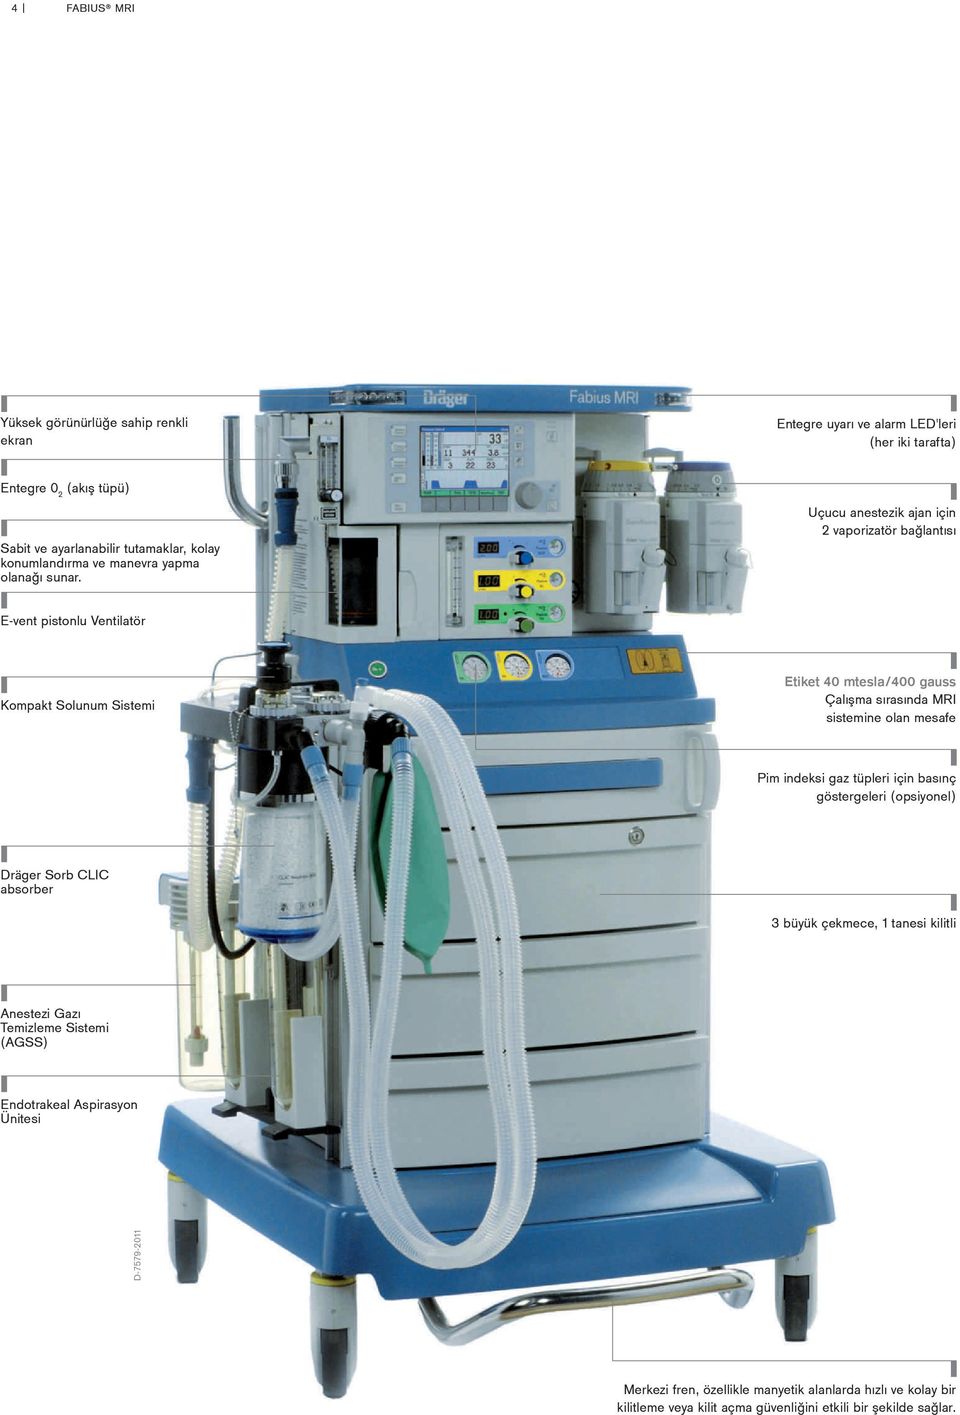 Uçucu anestezik ajan için 2 vaporizatör bağlantısı E-vent pistonlu Ventilatör Kompakt Solunum Sistemi Etiket 40 mtesla/400 gauss Çalışma sırasında MRI sistemine olan mesafe Pim